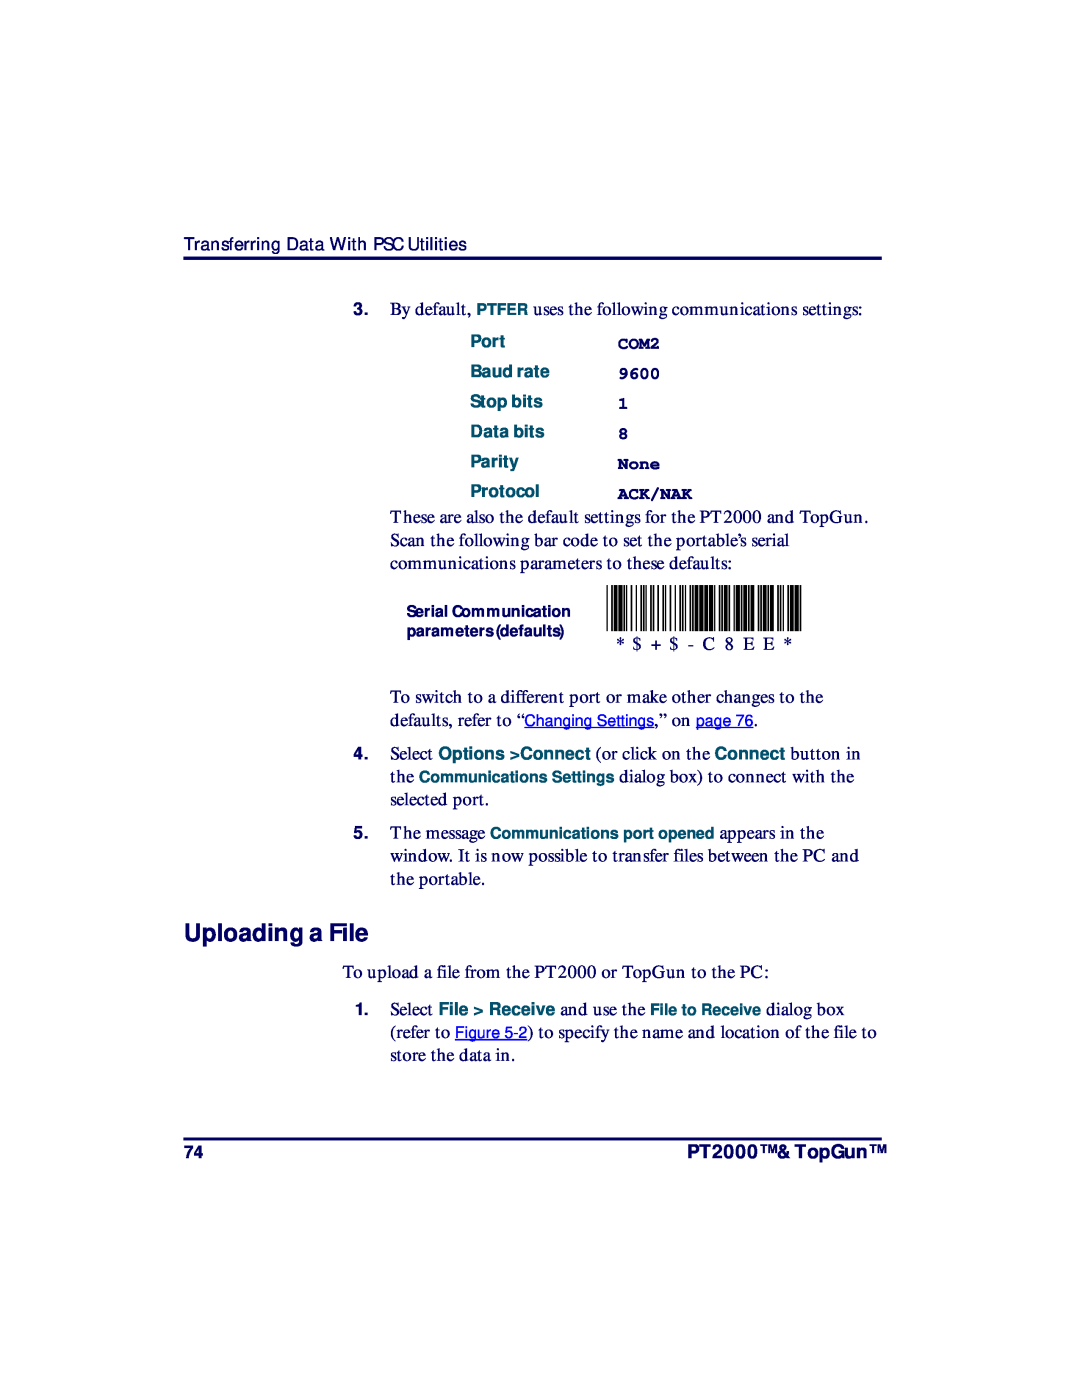 PSC TopGun, PT2000 manual $+$-C8EE, Uploading a File 